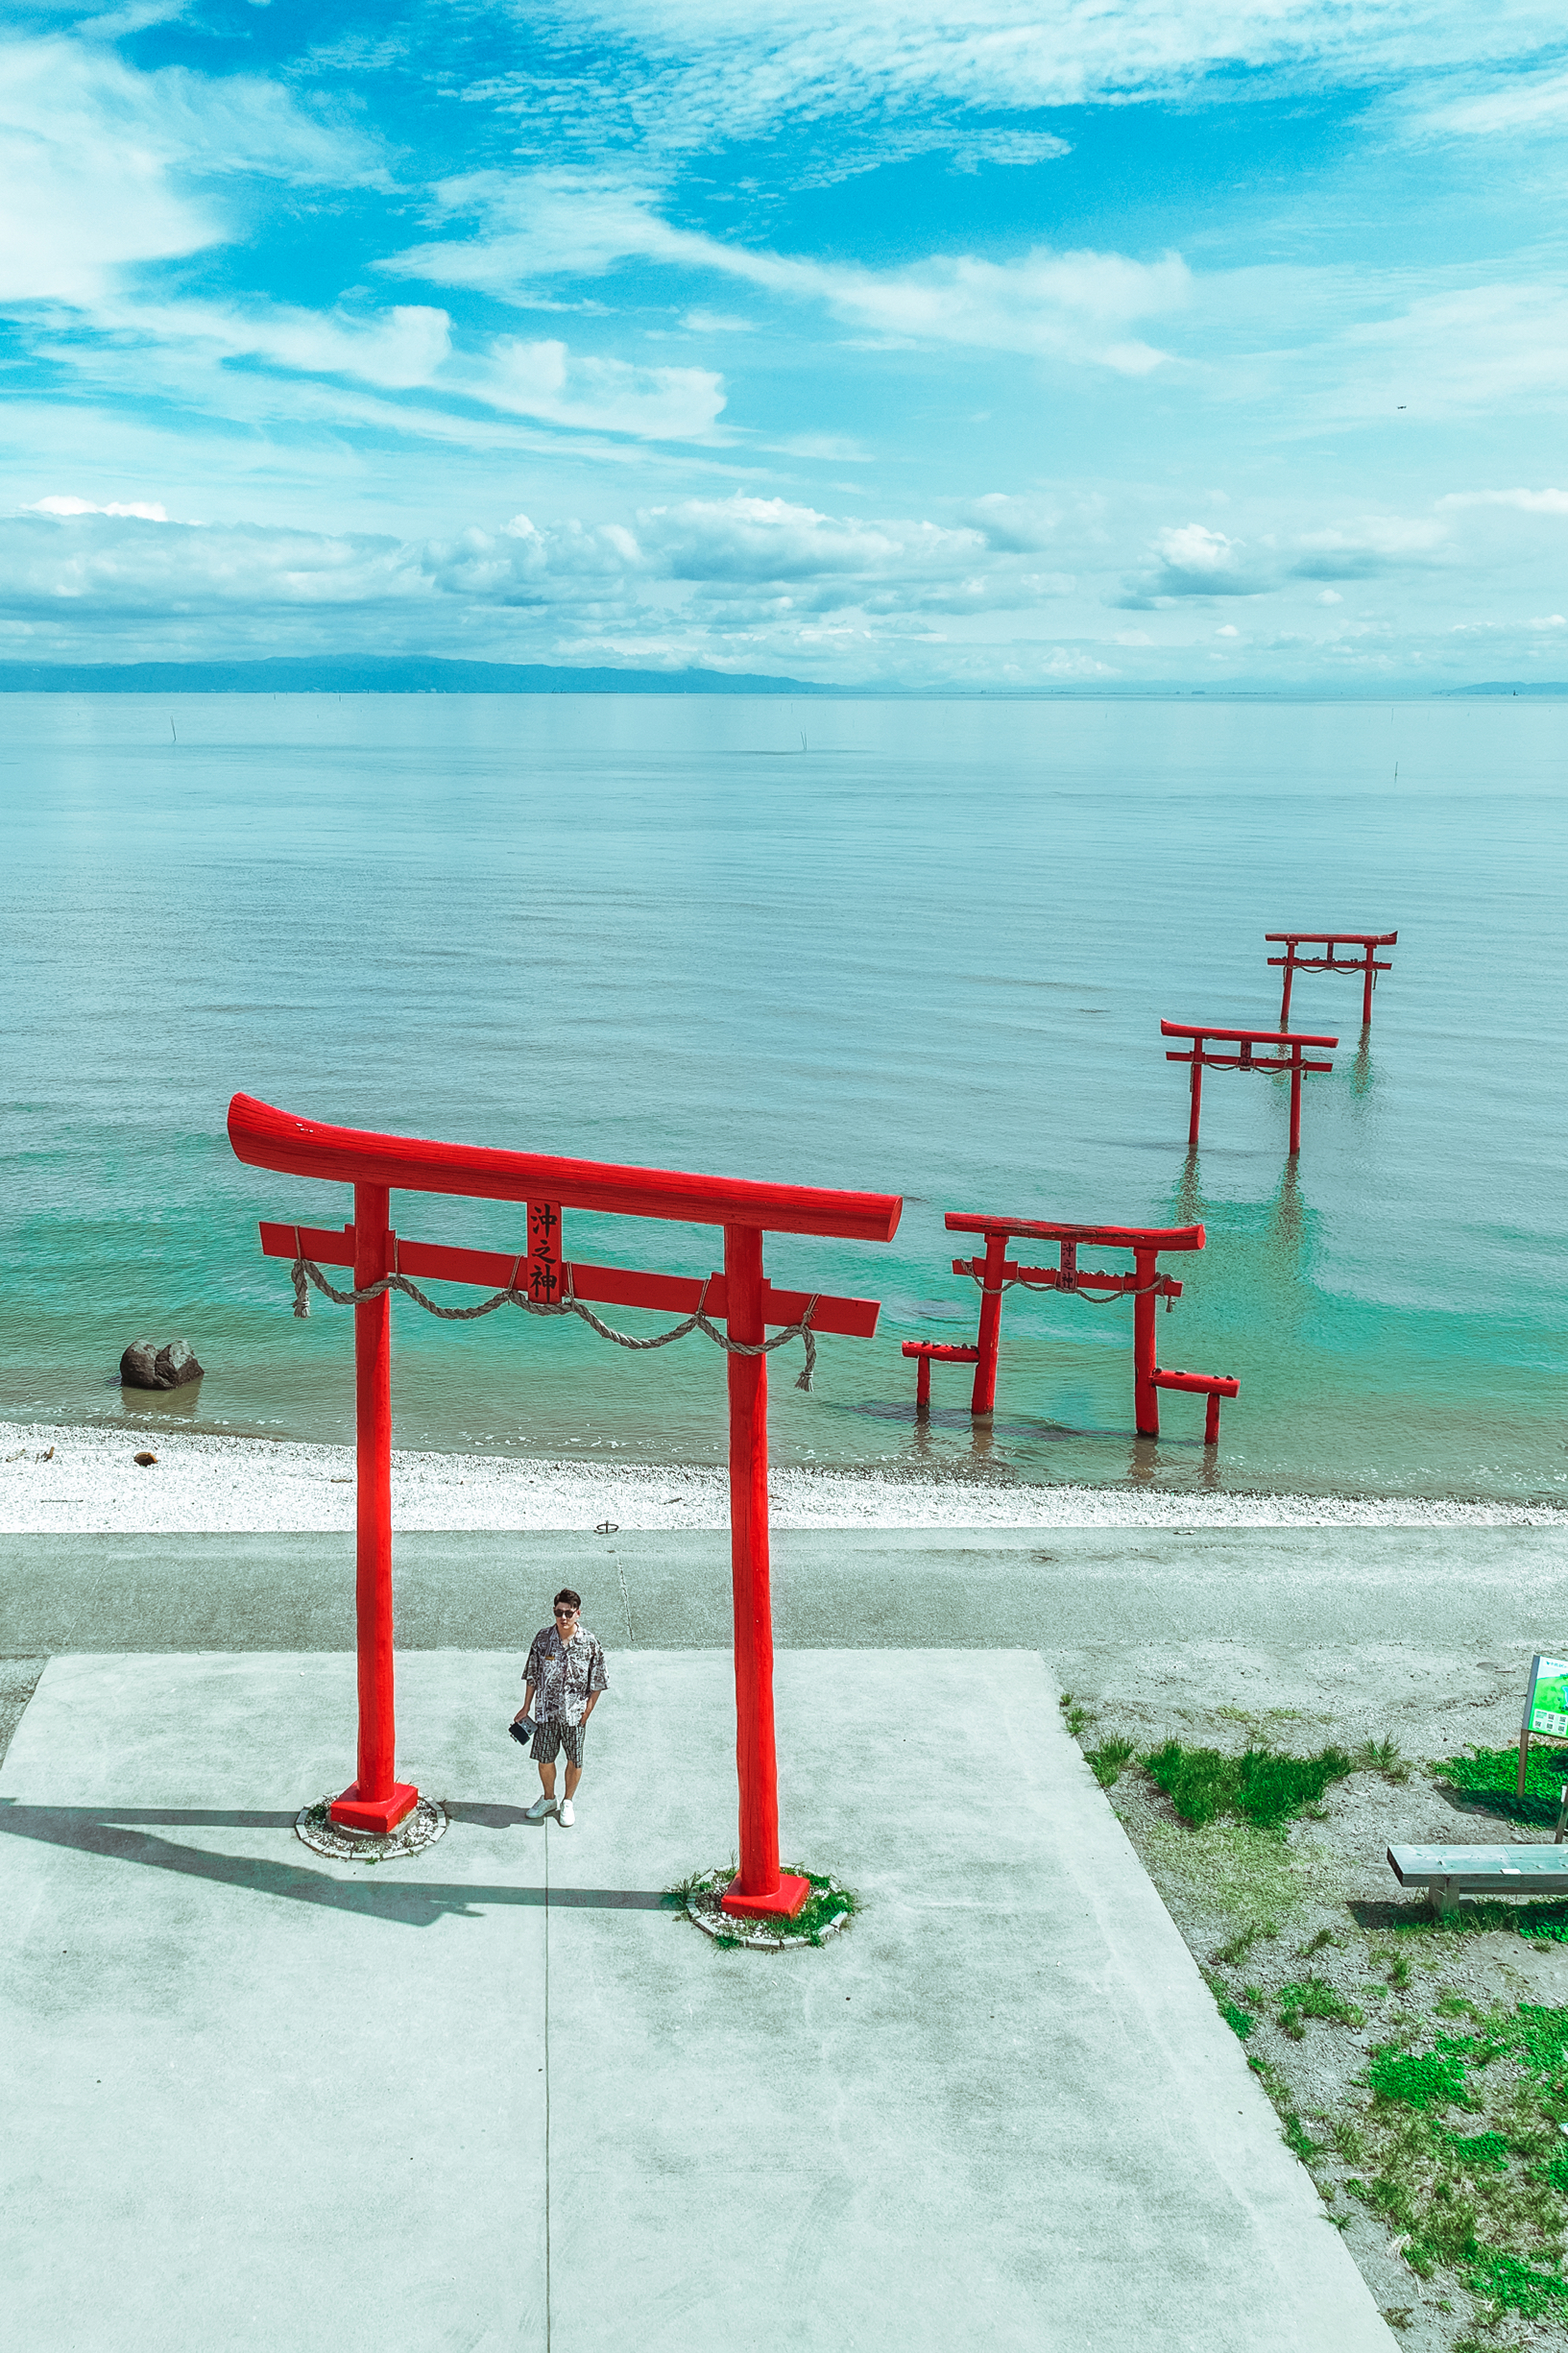 潮汐涨落|大鱼神社海中鸟居|日本九州旅行